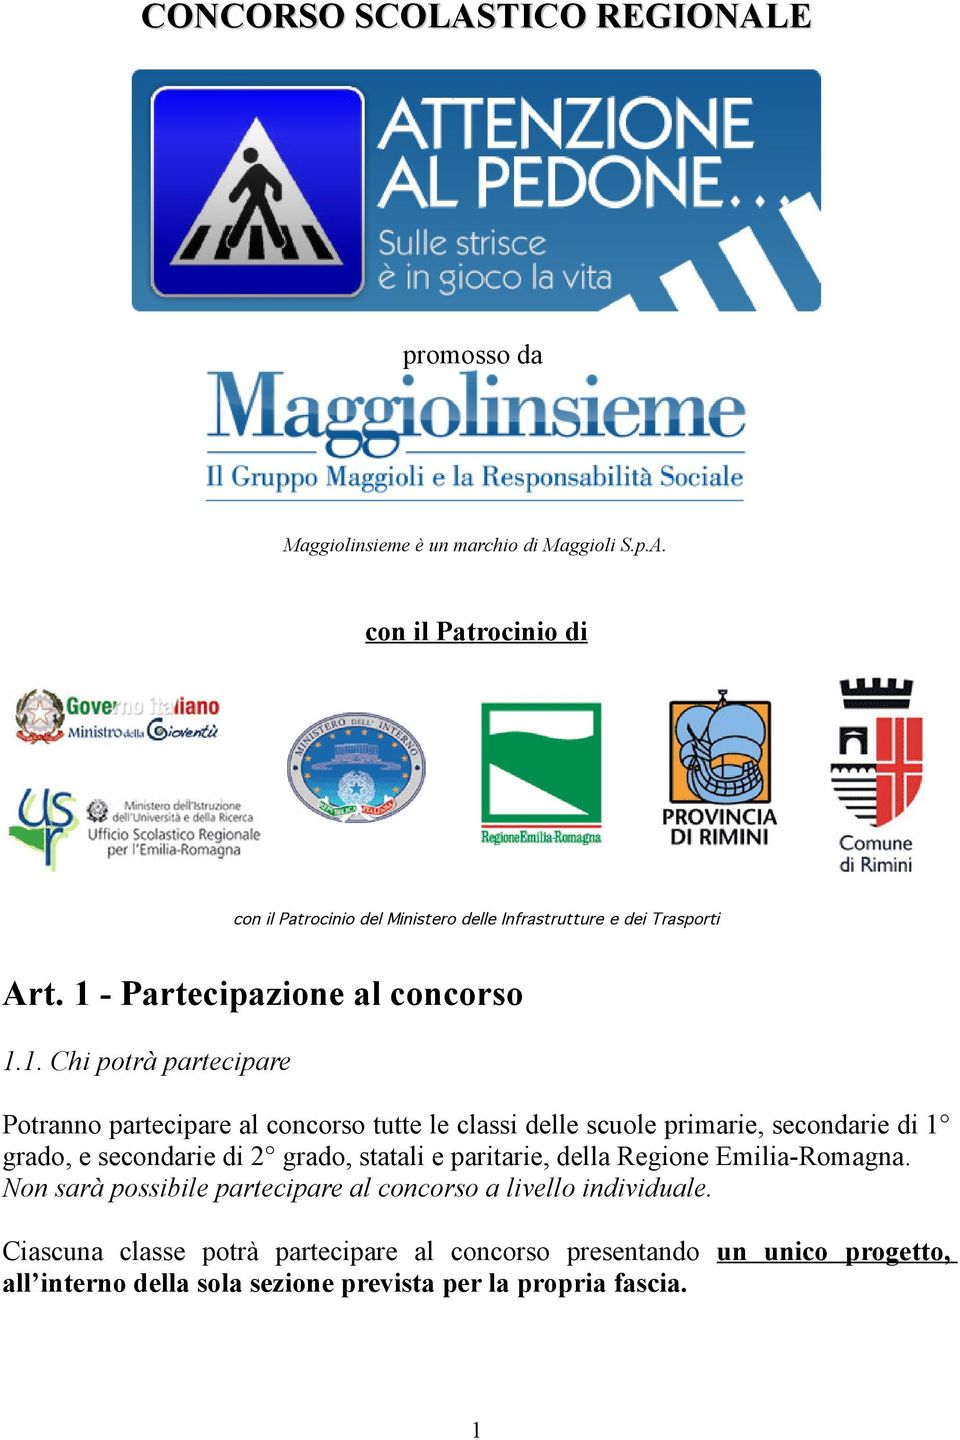 secondarie di 2 grado, statali e paritarie, della Regione Emilia-Romagna. Non sarà possibile partecipare al concorso a livello individuale.